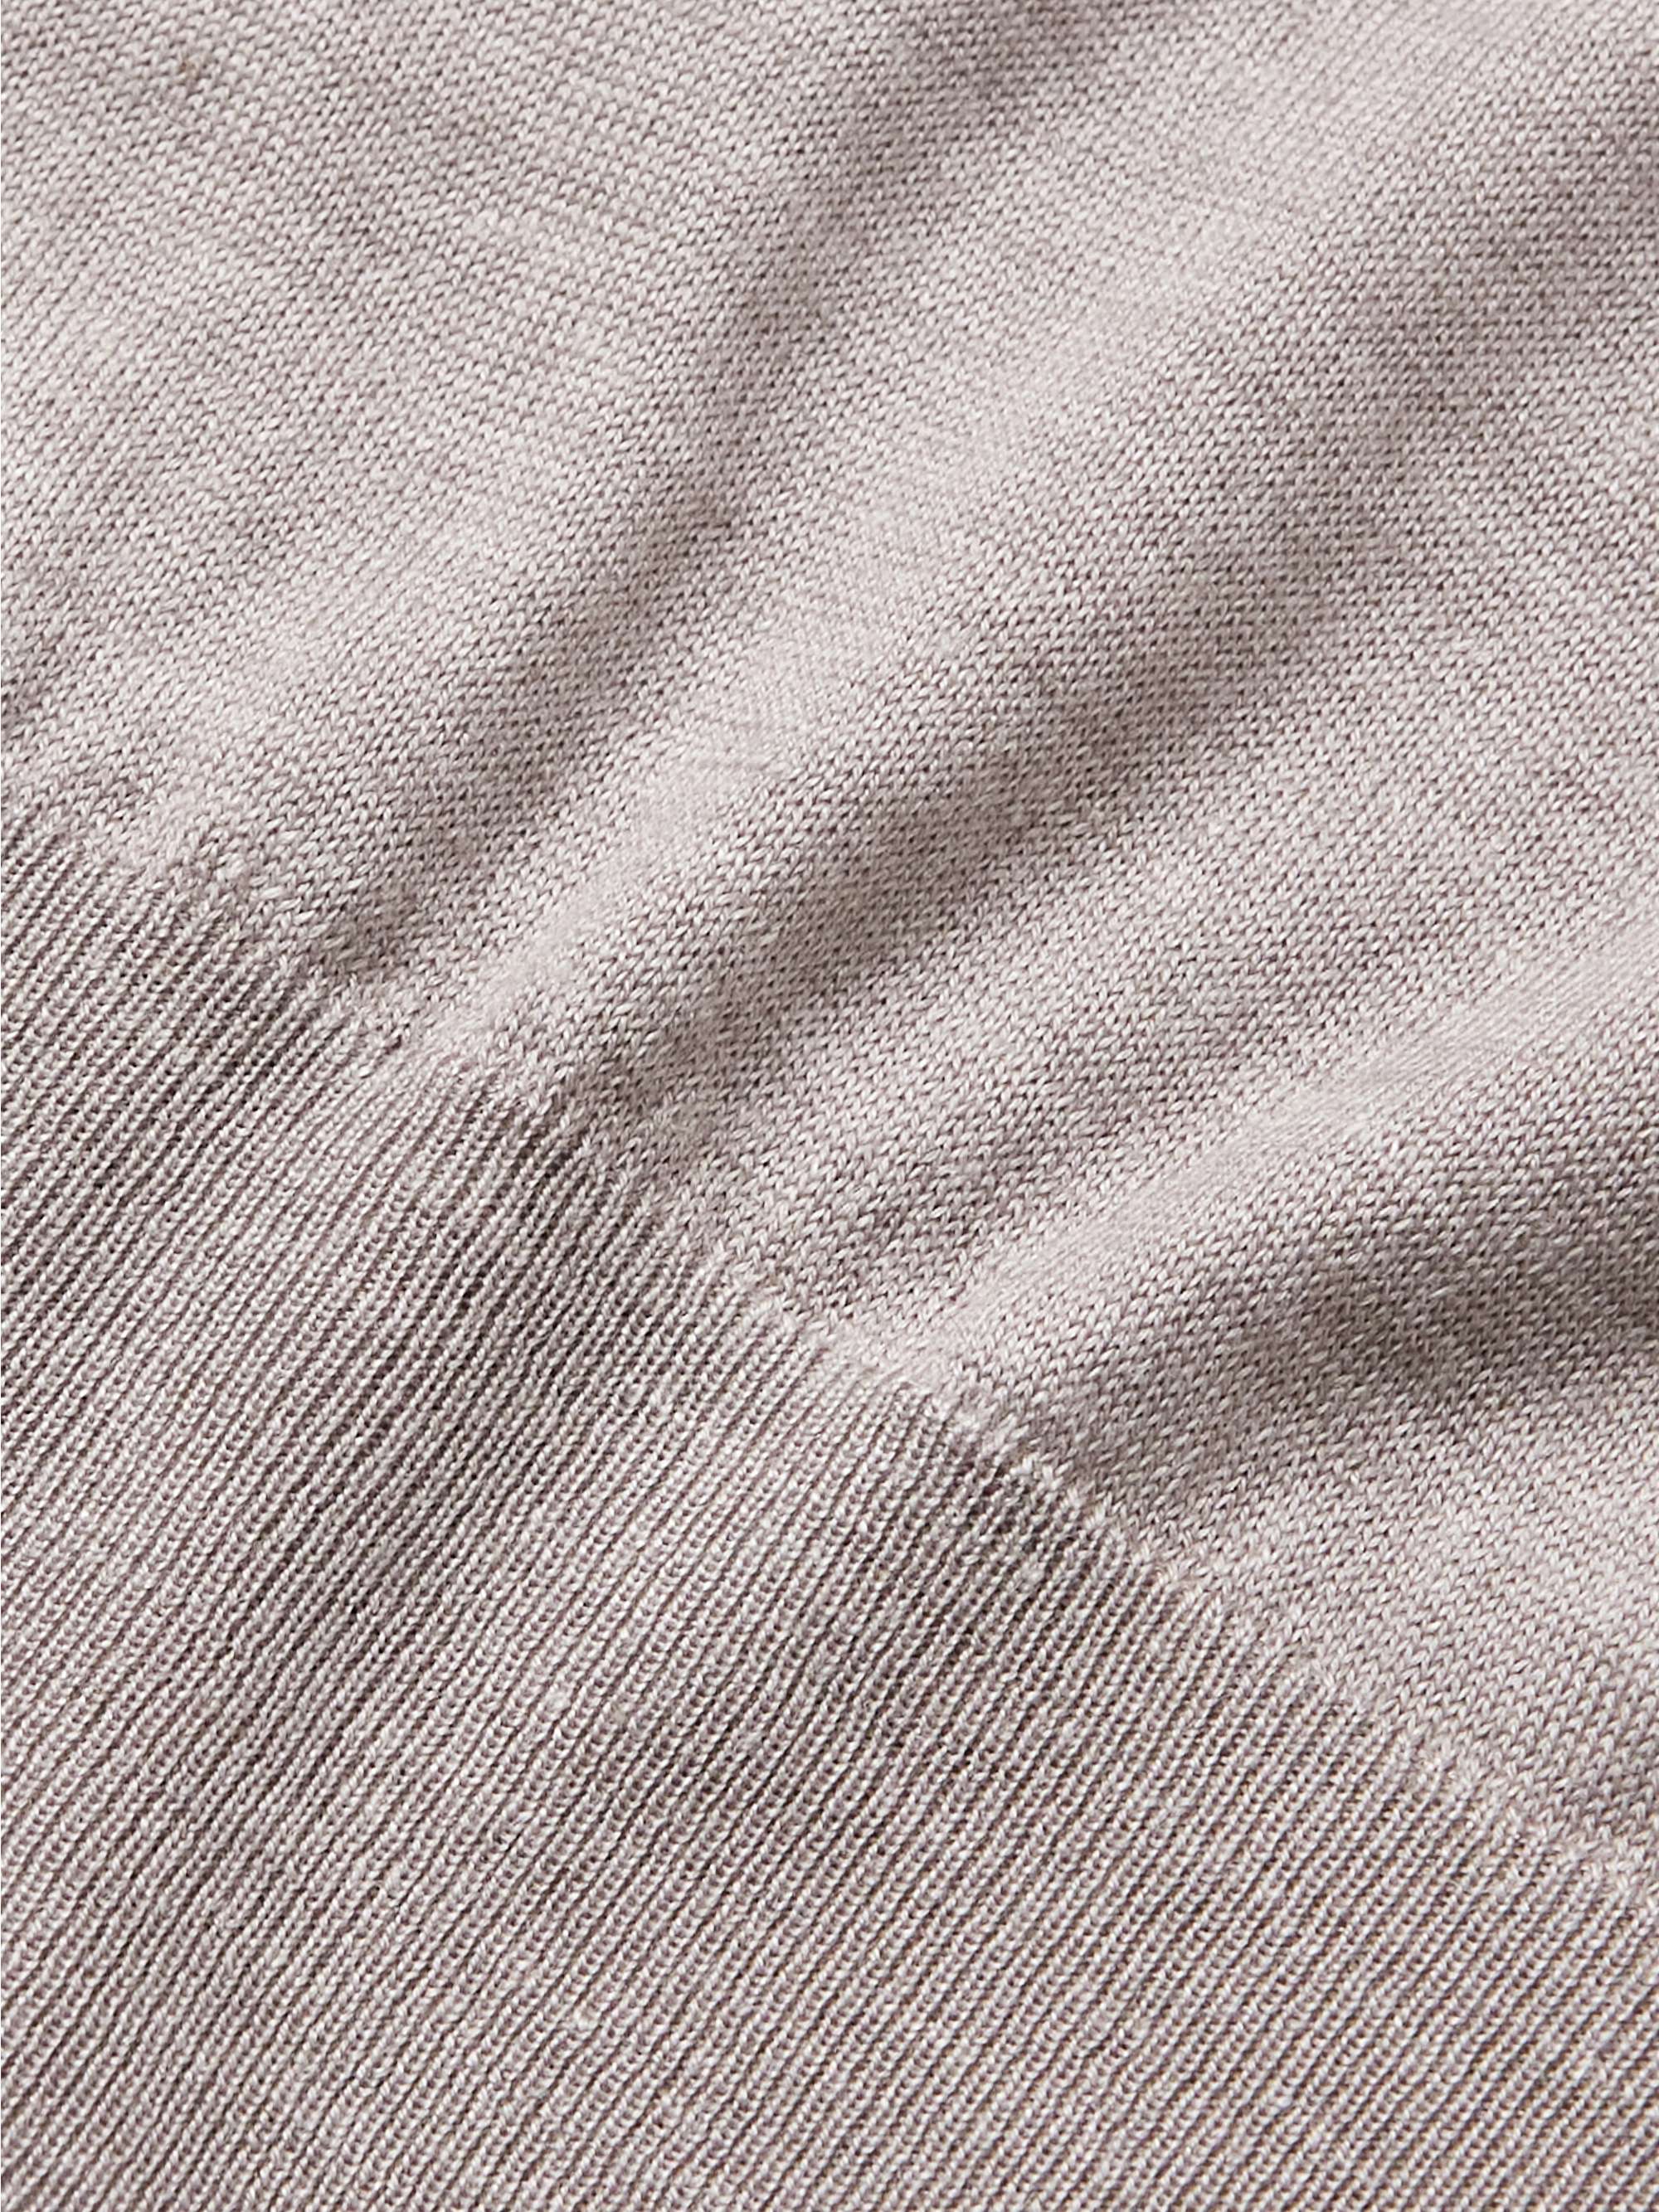 ZEGNA Silk, Cashmere and Linen-Blend Sweater